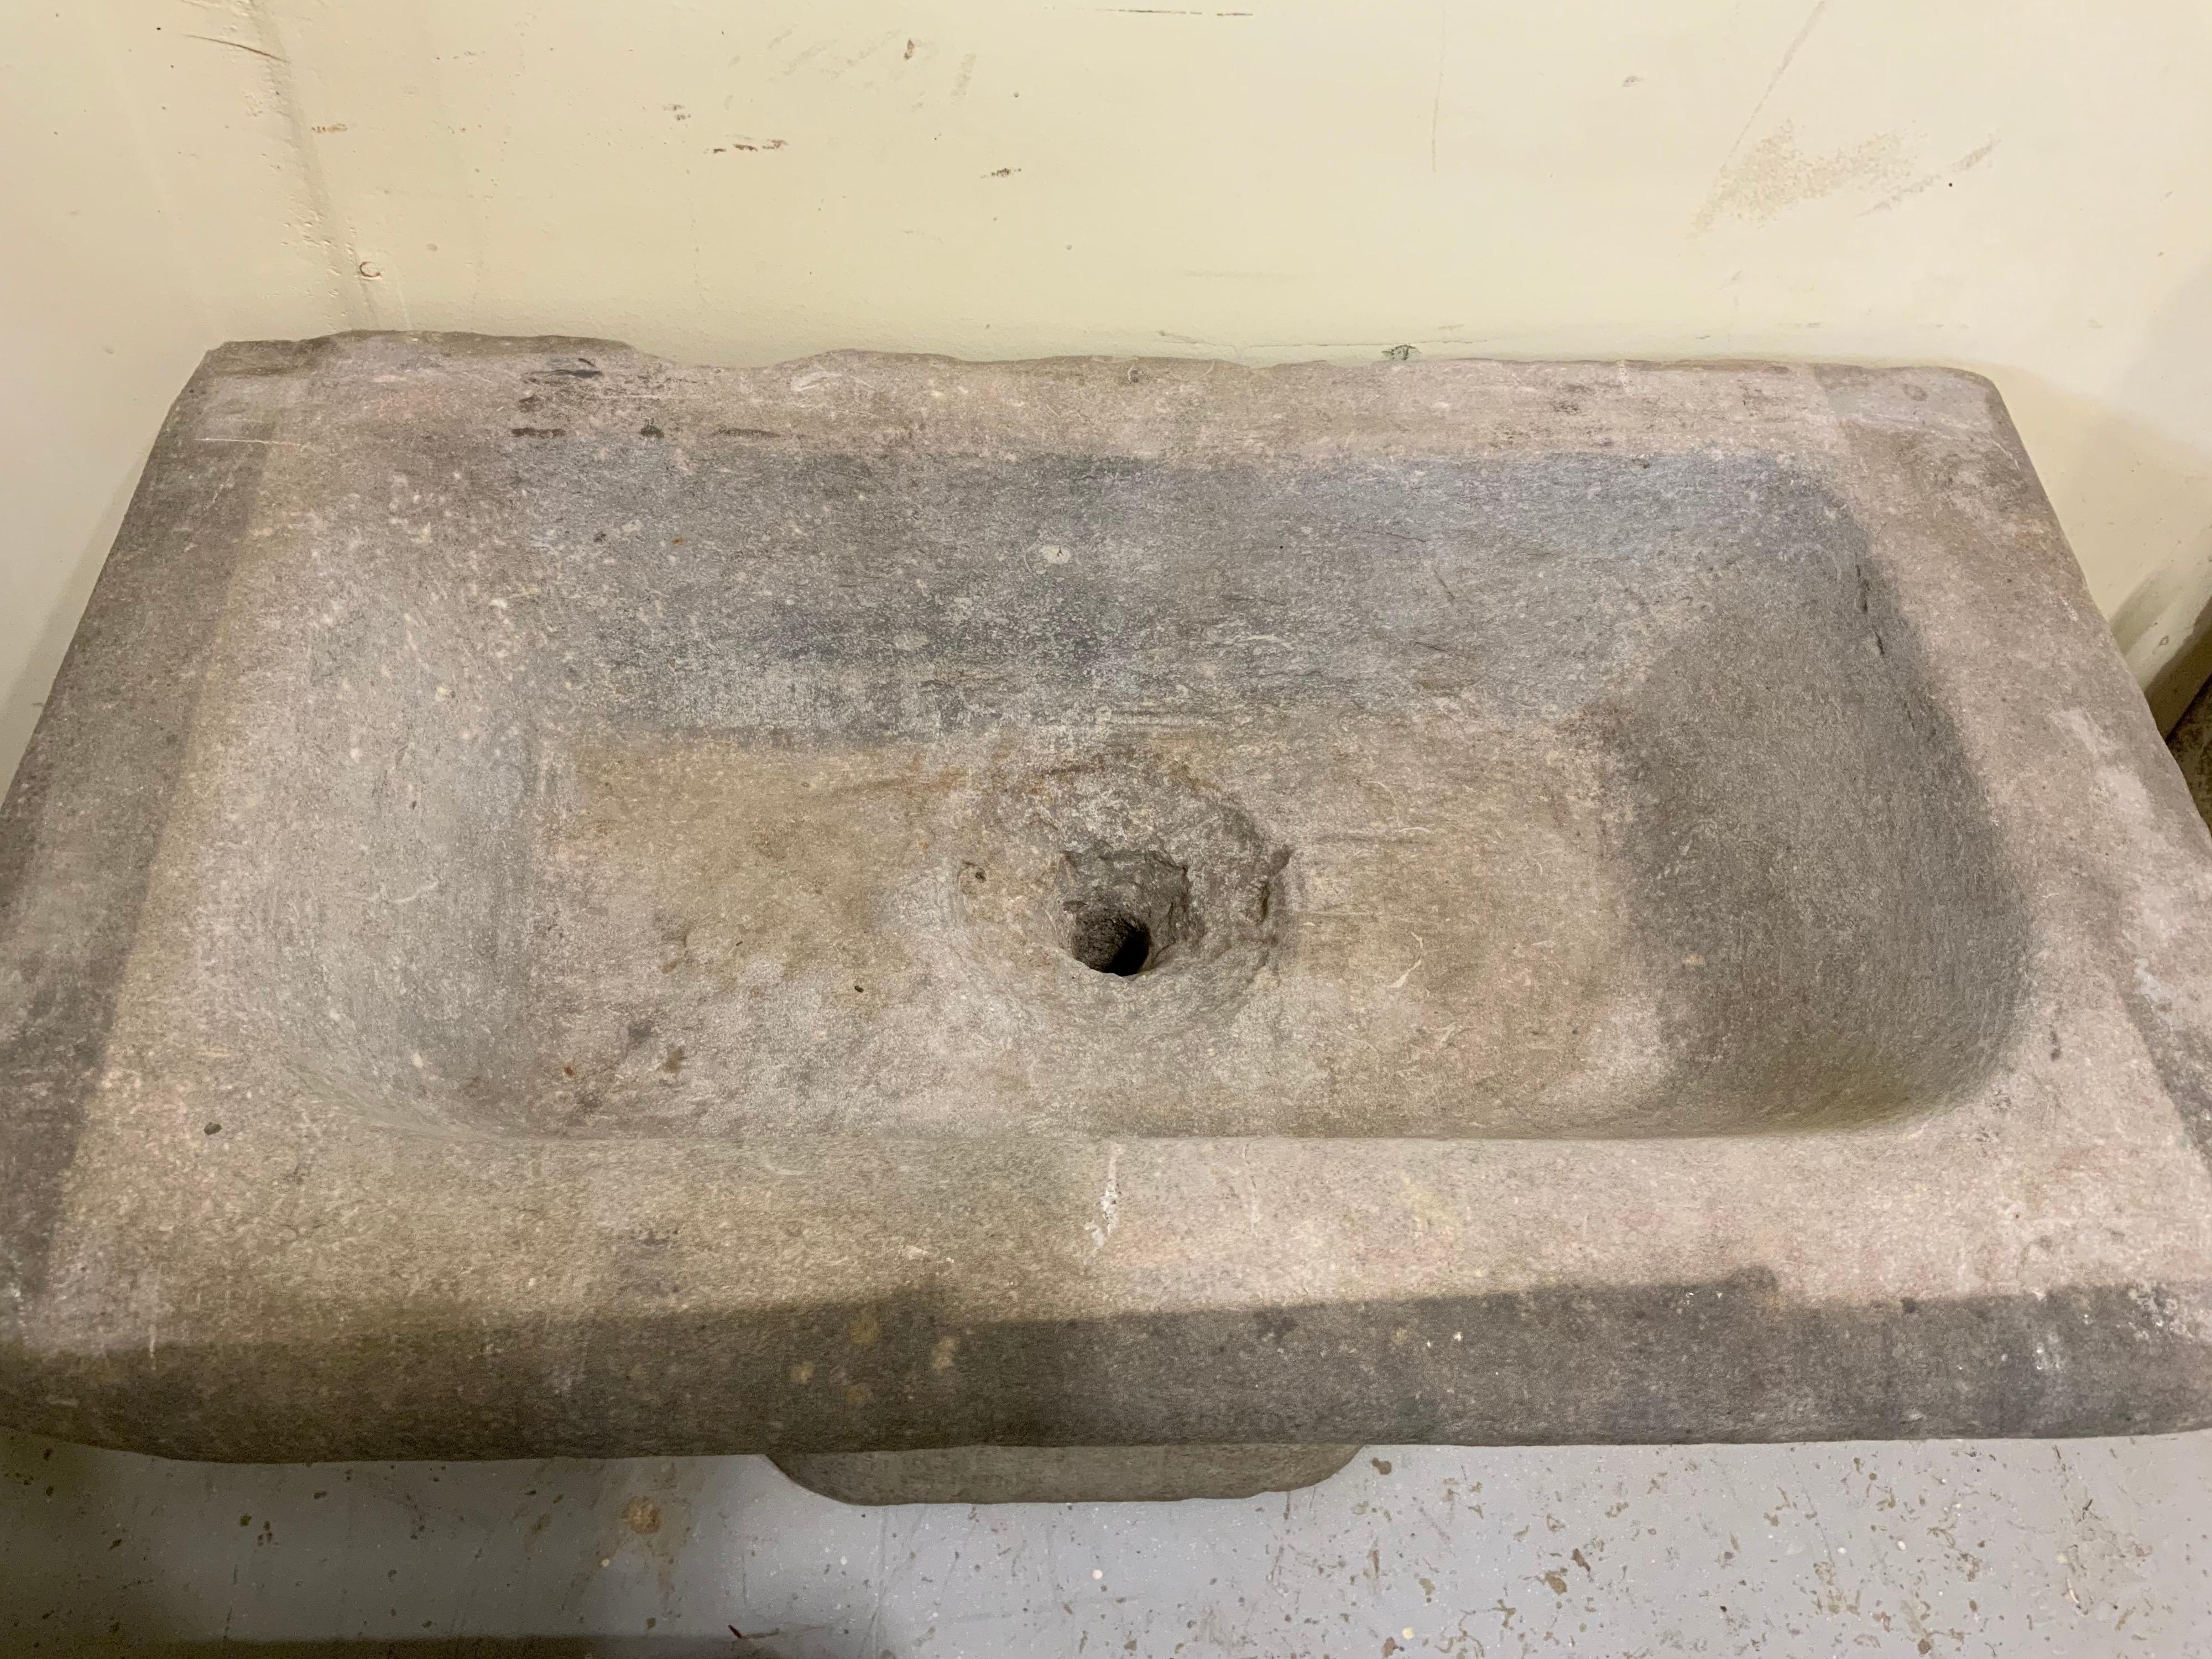 18th century sink